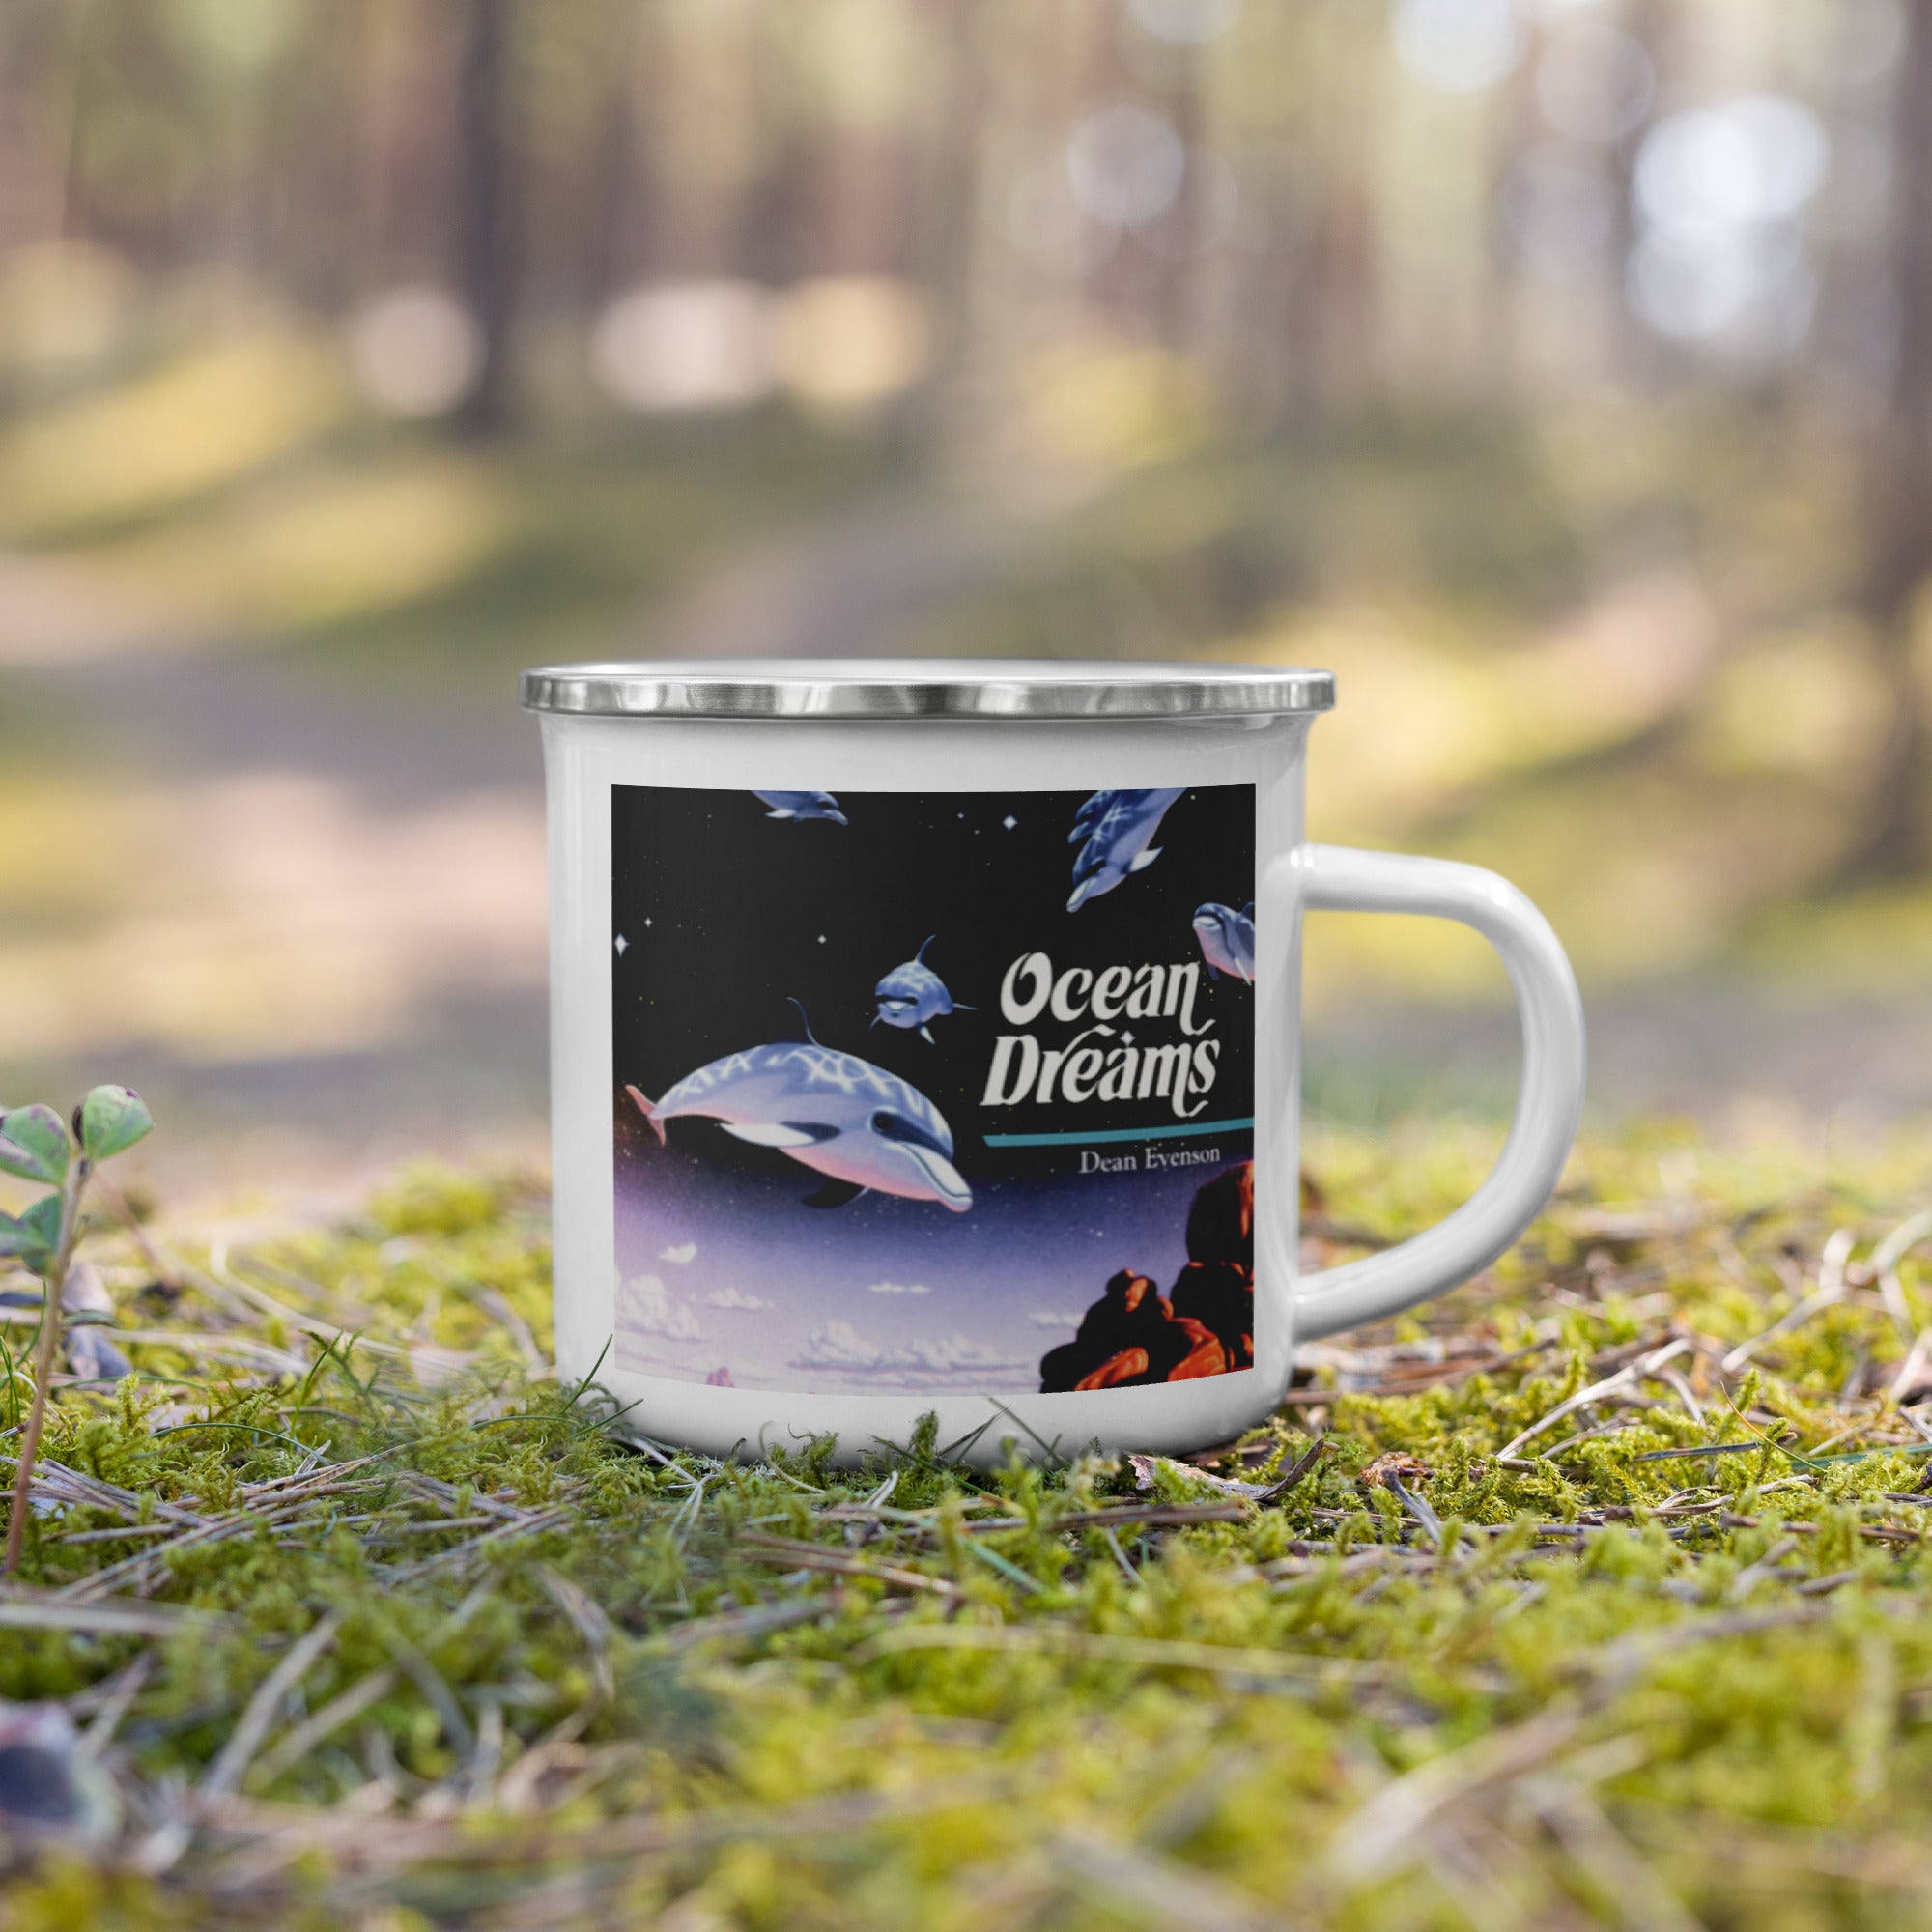 Soundings coffee mug - COEAN DREAMS